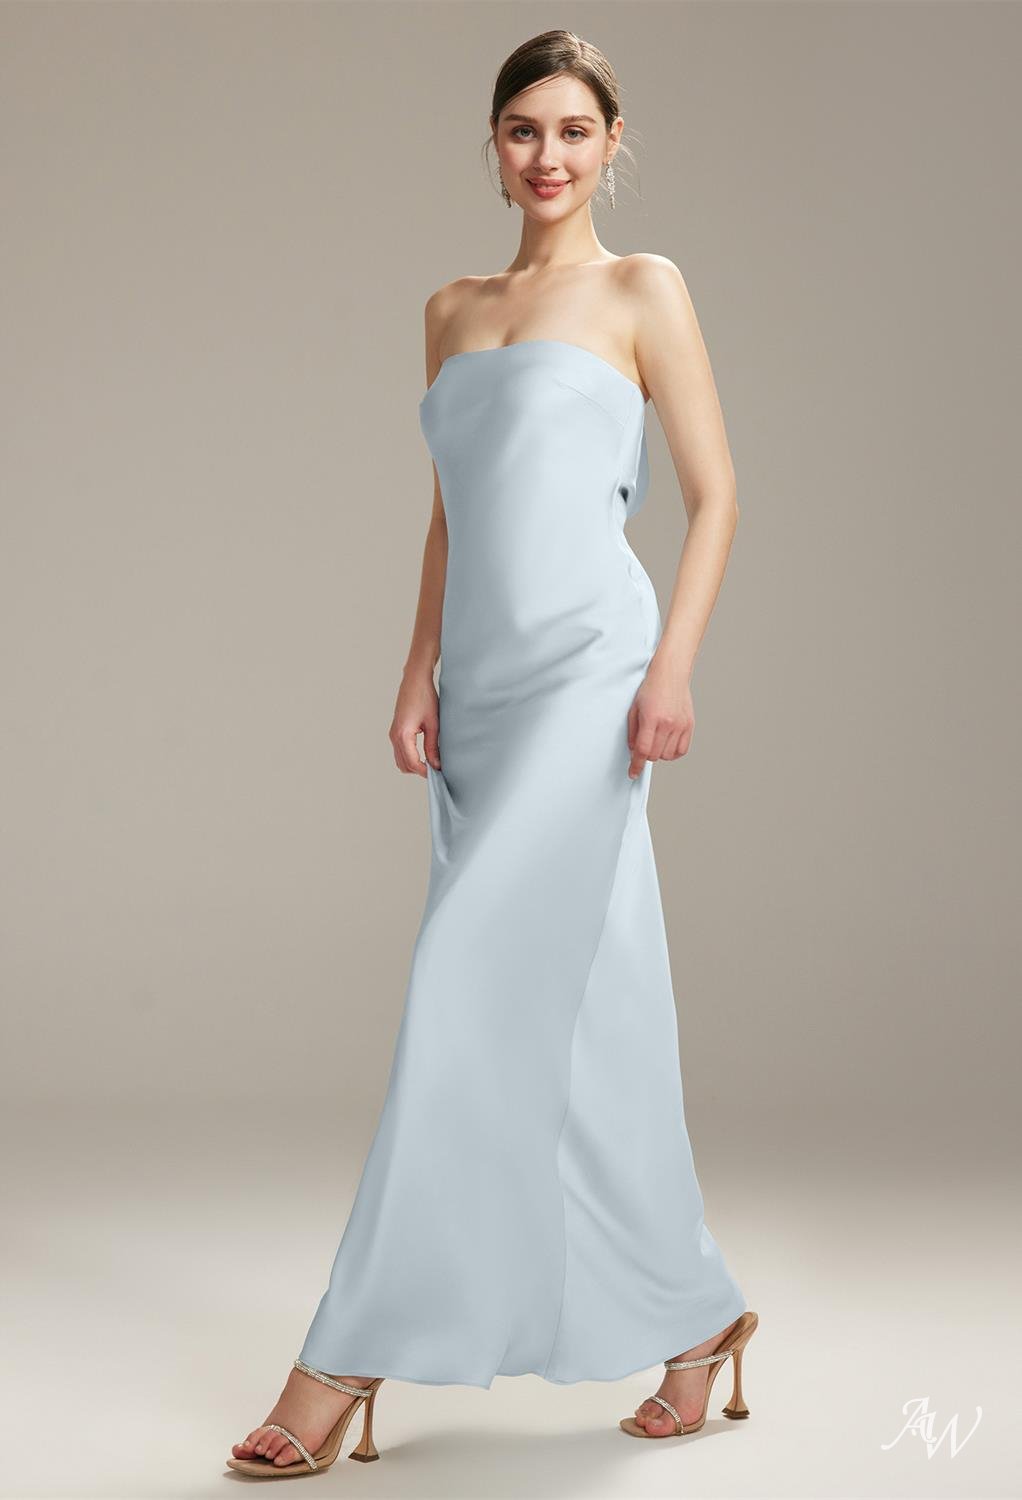 www.santabarbarawedding.com | AW Bridal | AW Fogbow Dress - Baby Blue Satin Bridesmaid Dress